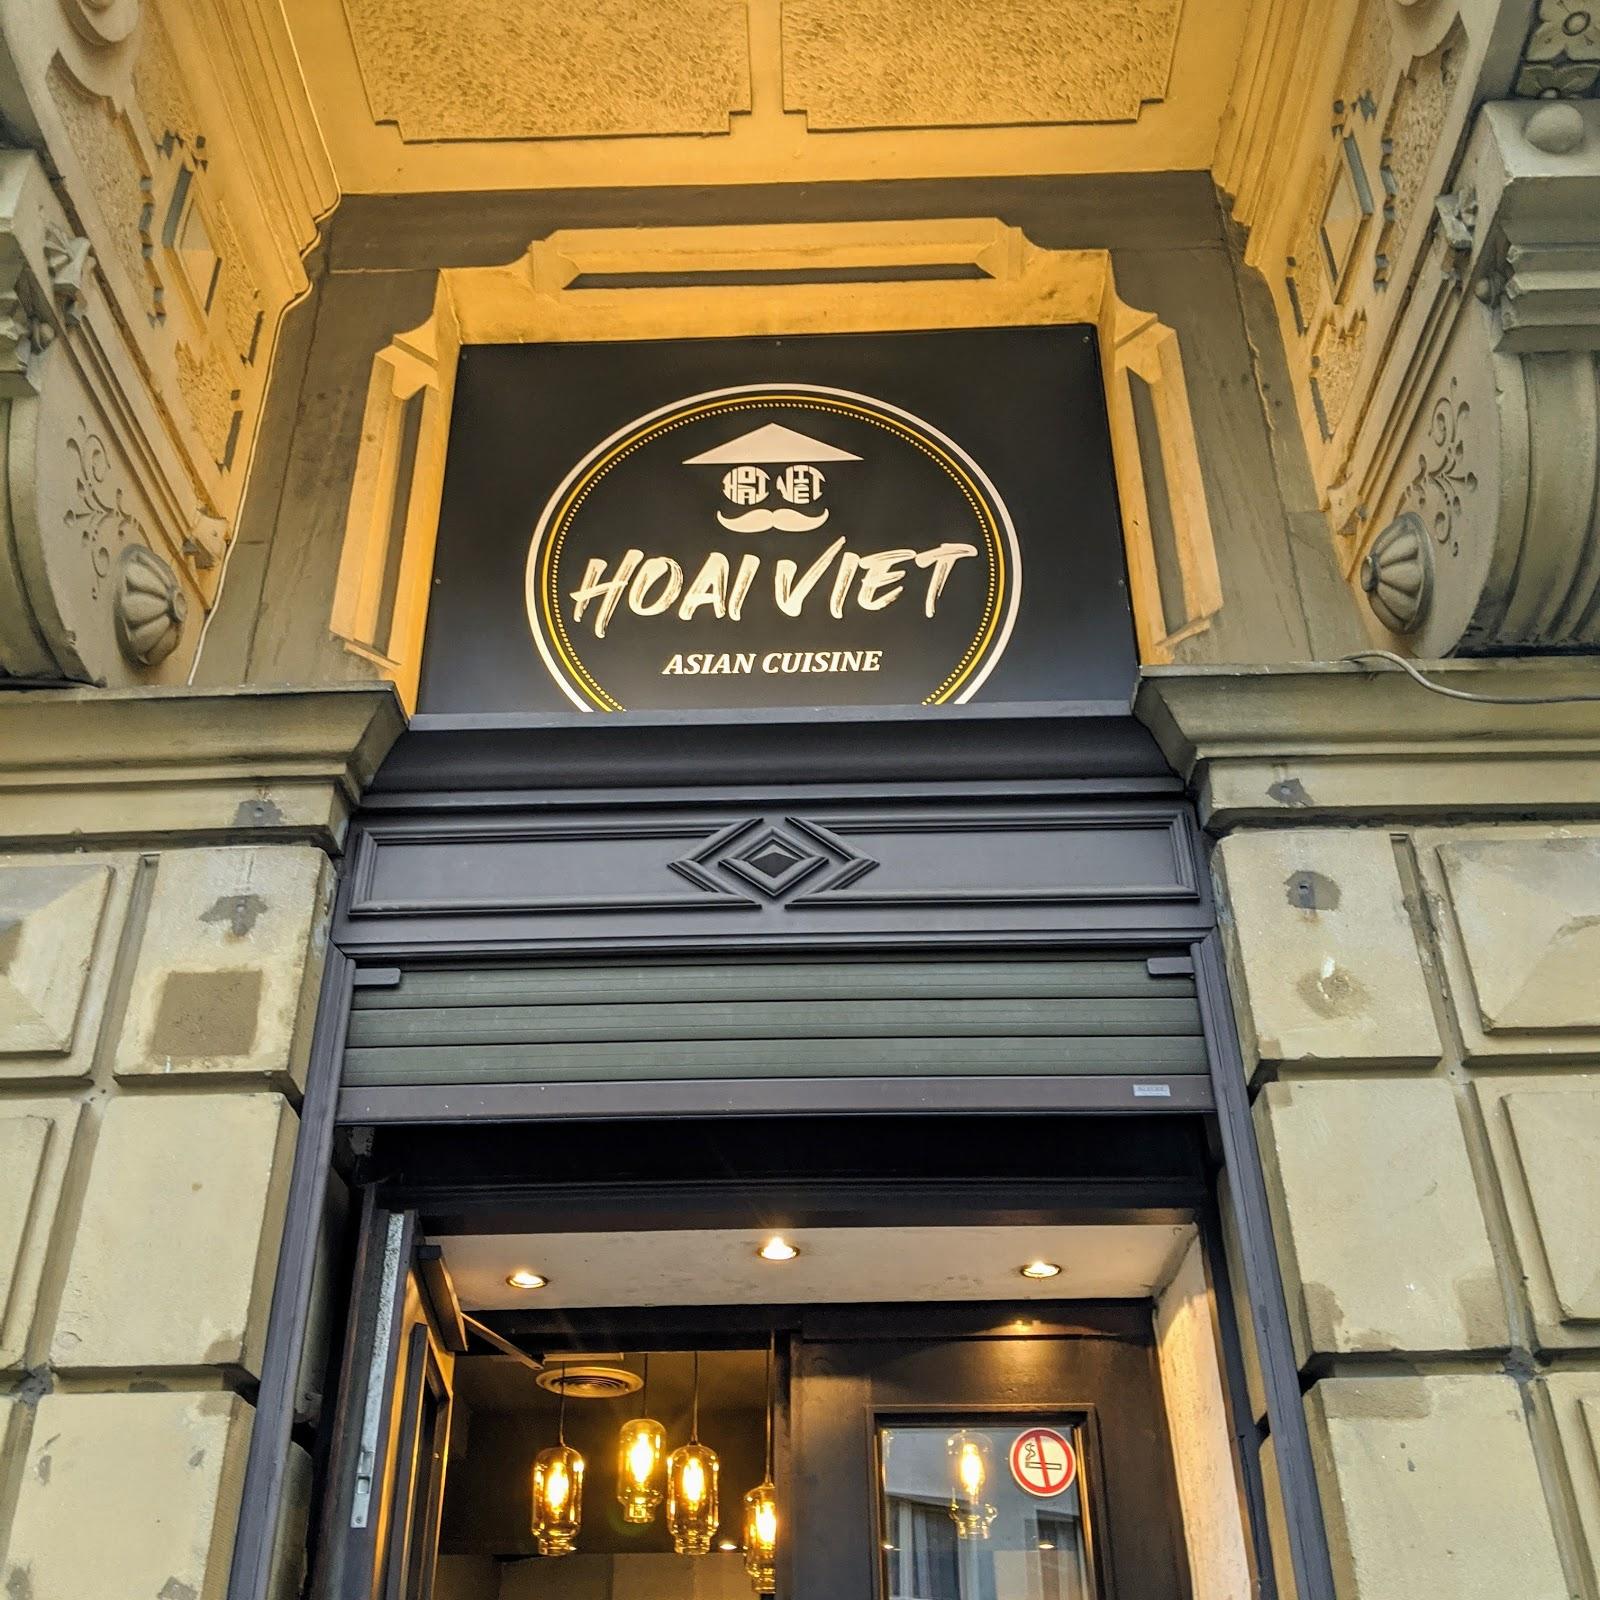 Restaurant "Hoai Viet" in Köln